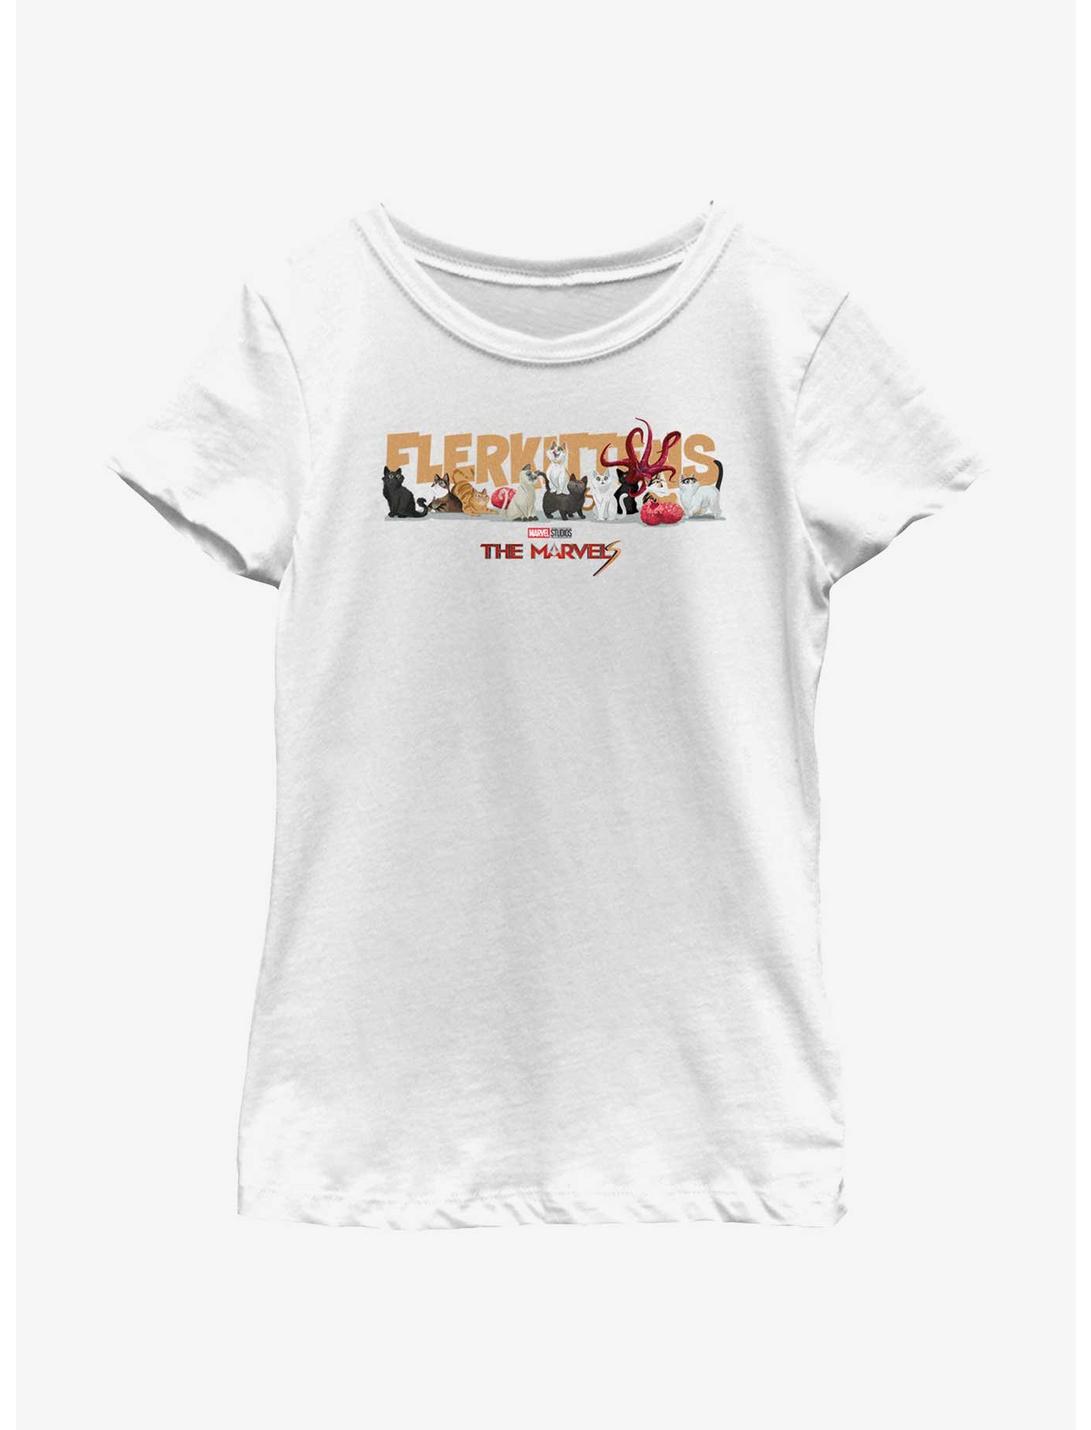 Marvel The Marvels Flerkittens Youth Girls T-Shirt, WHITE, hi-res